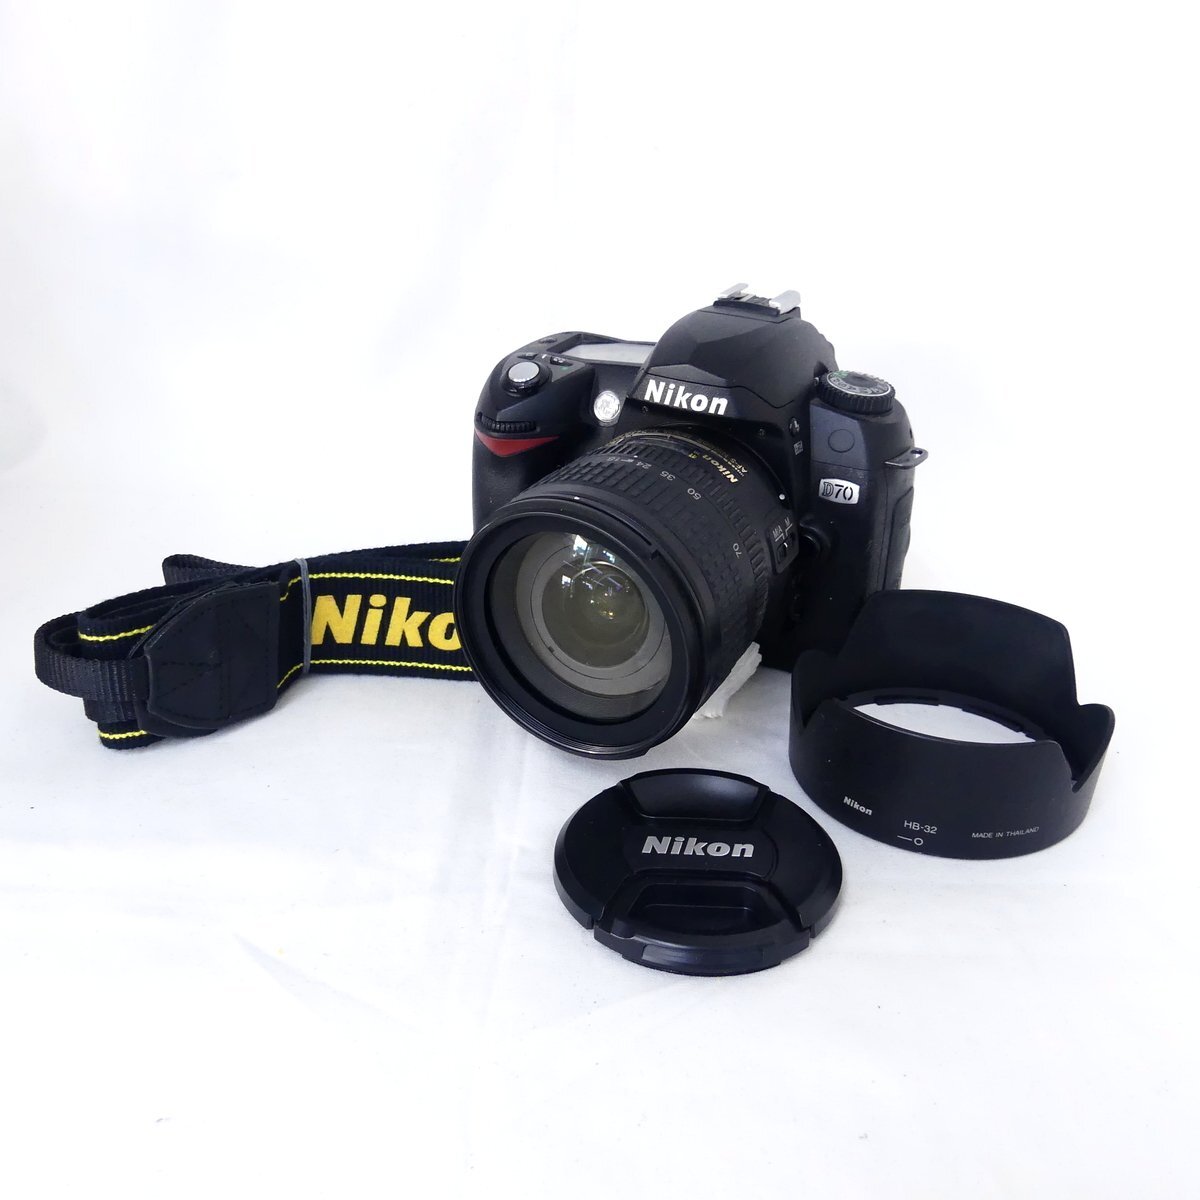 Nikon ニコン D70 + AF-S DX NIKKOR 18-70mm F3.5-4.6 G ED デジタル一眼レフカメラ 動作品 現状 USED /2405C_画像1